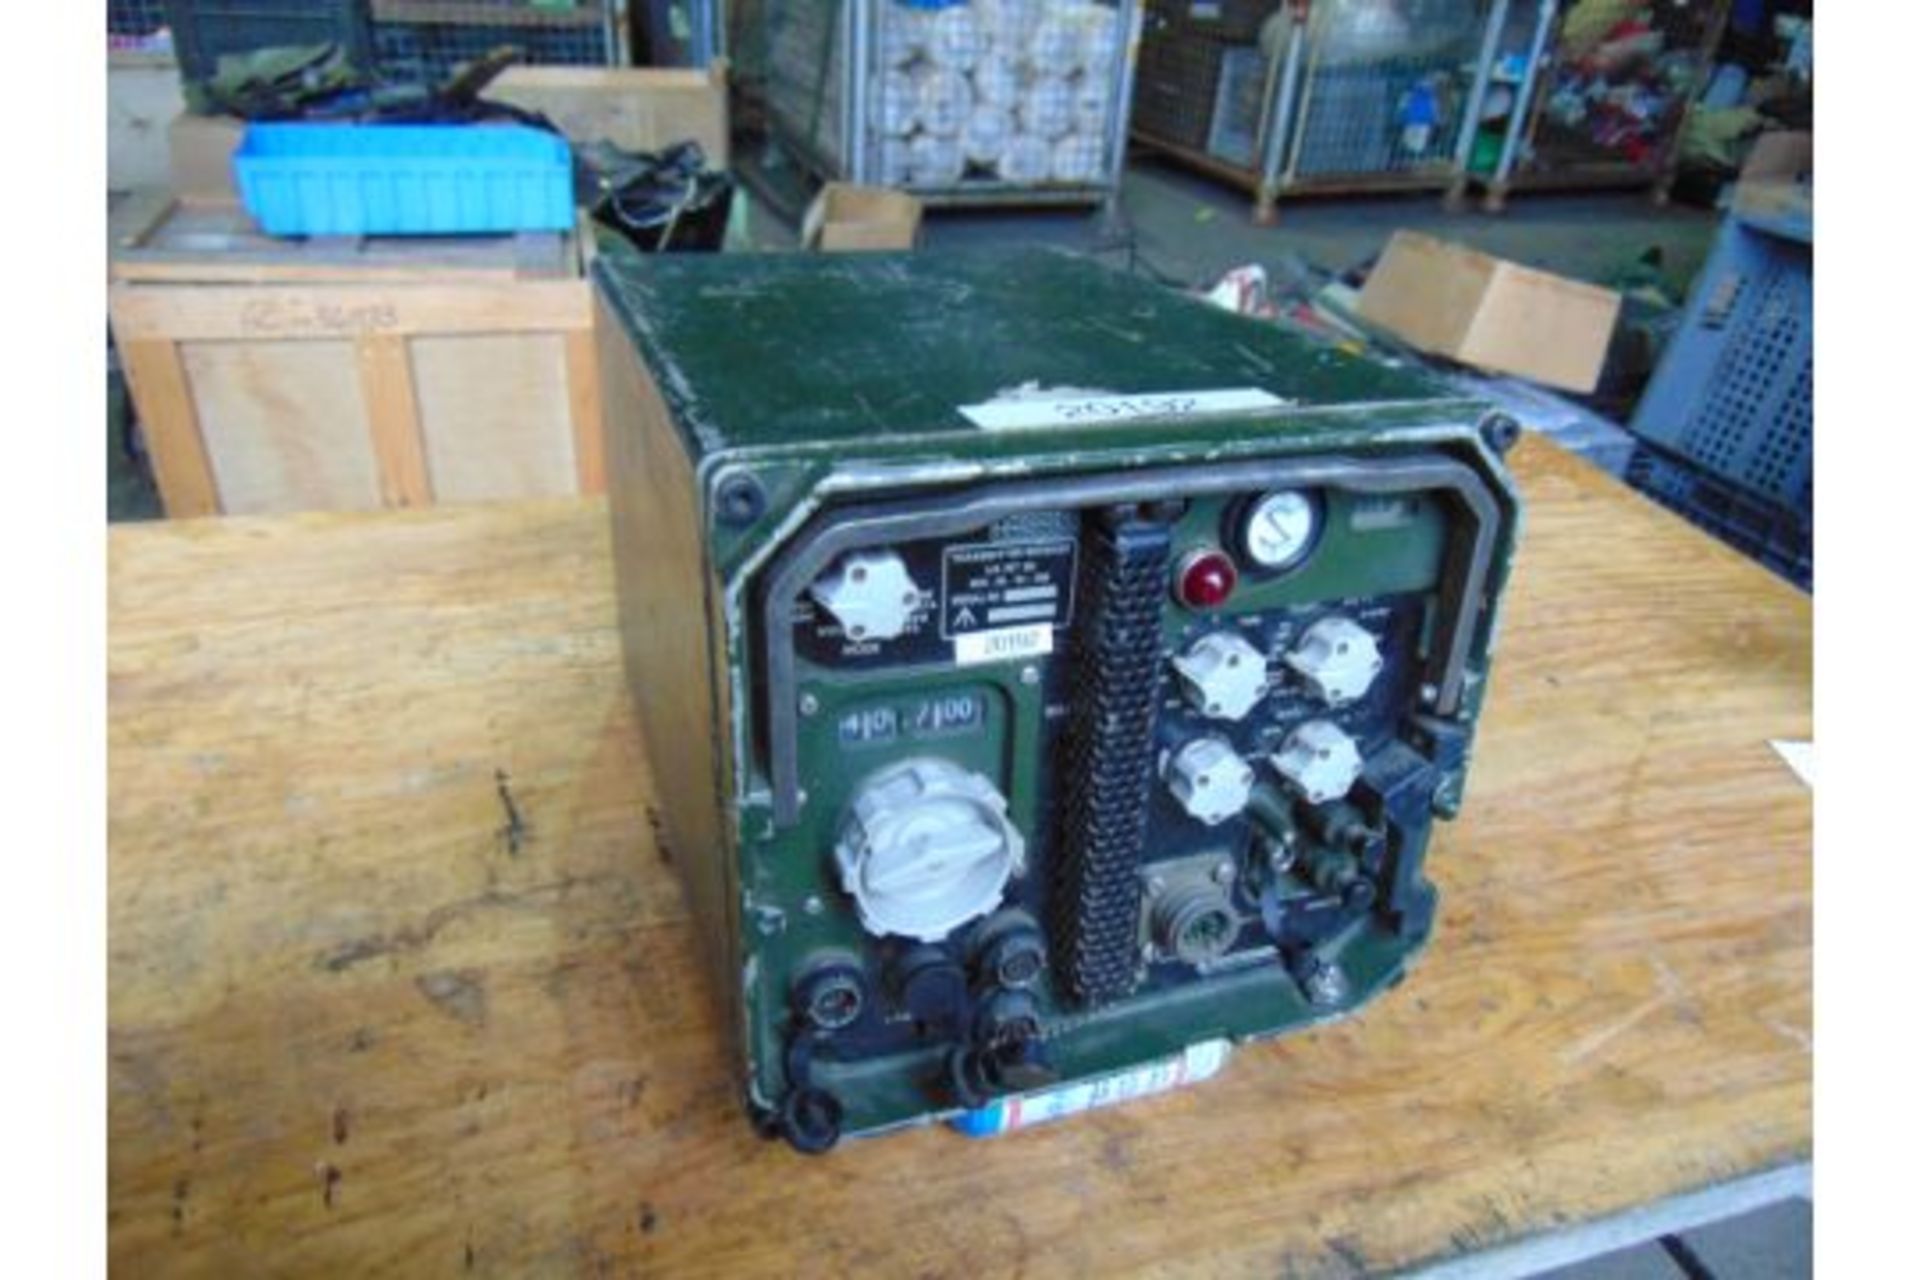 Clansman RT/UK 353 Vehicle Mounted Transmitter Receiver - Image 2 of 4